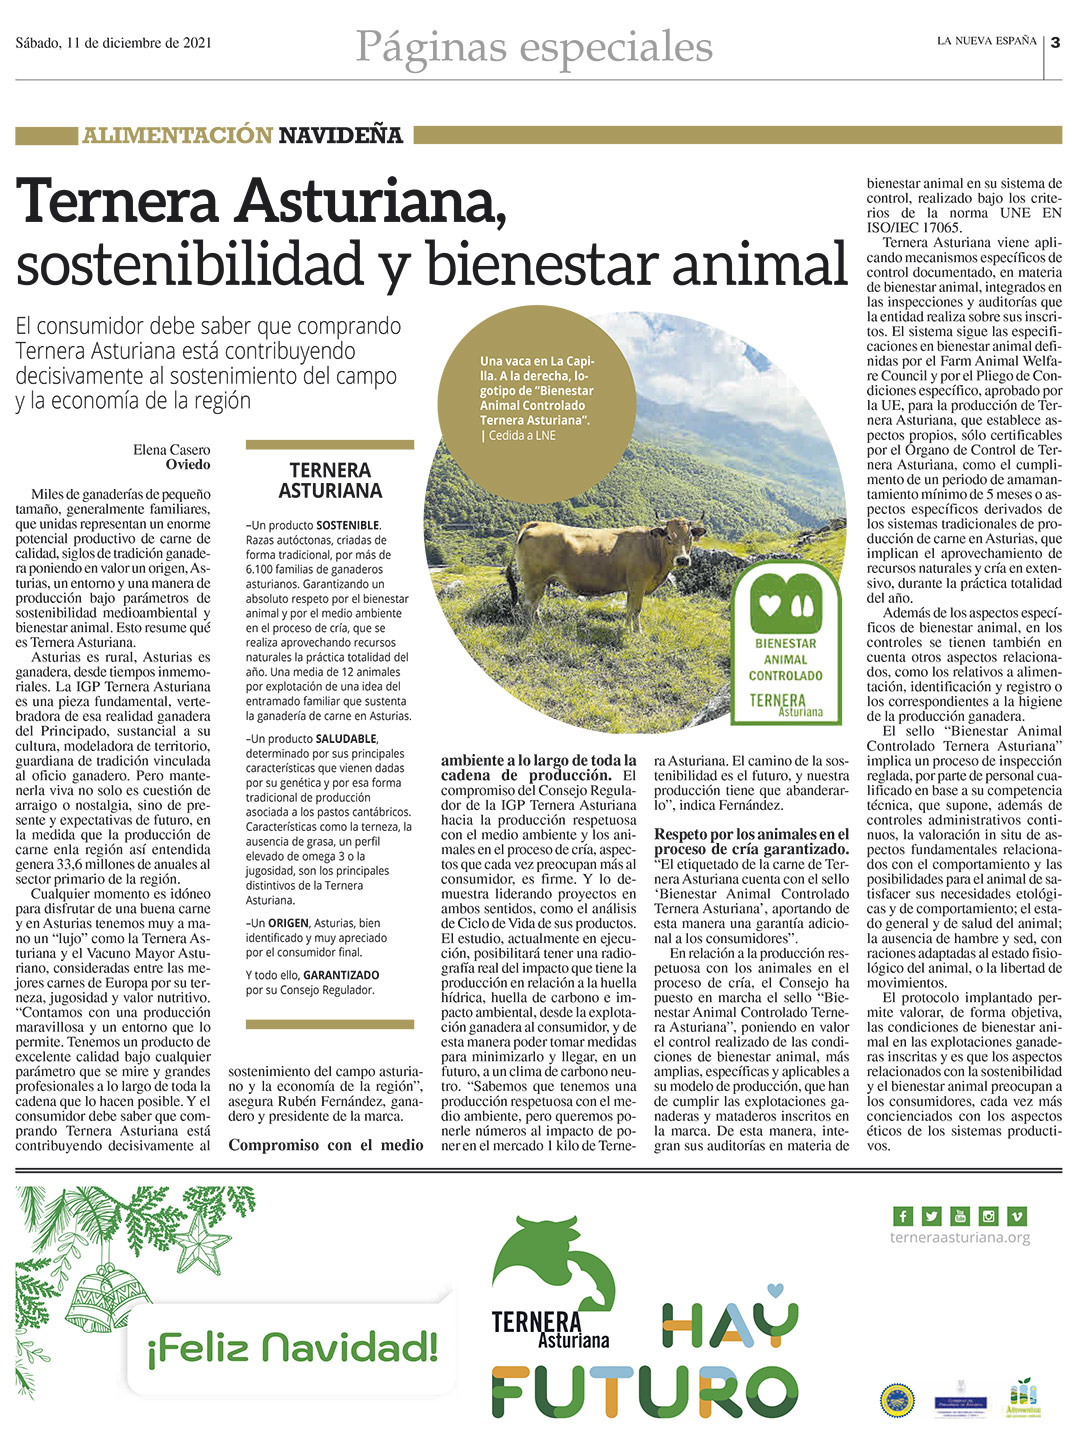 Ternera Asturiana, sostenibilidad y bienestar animal.